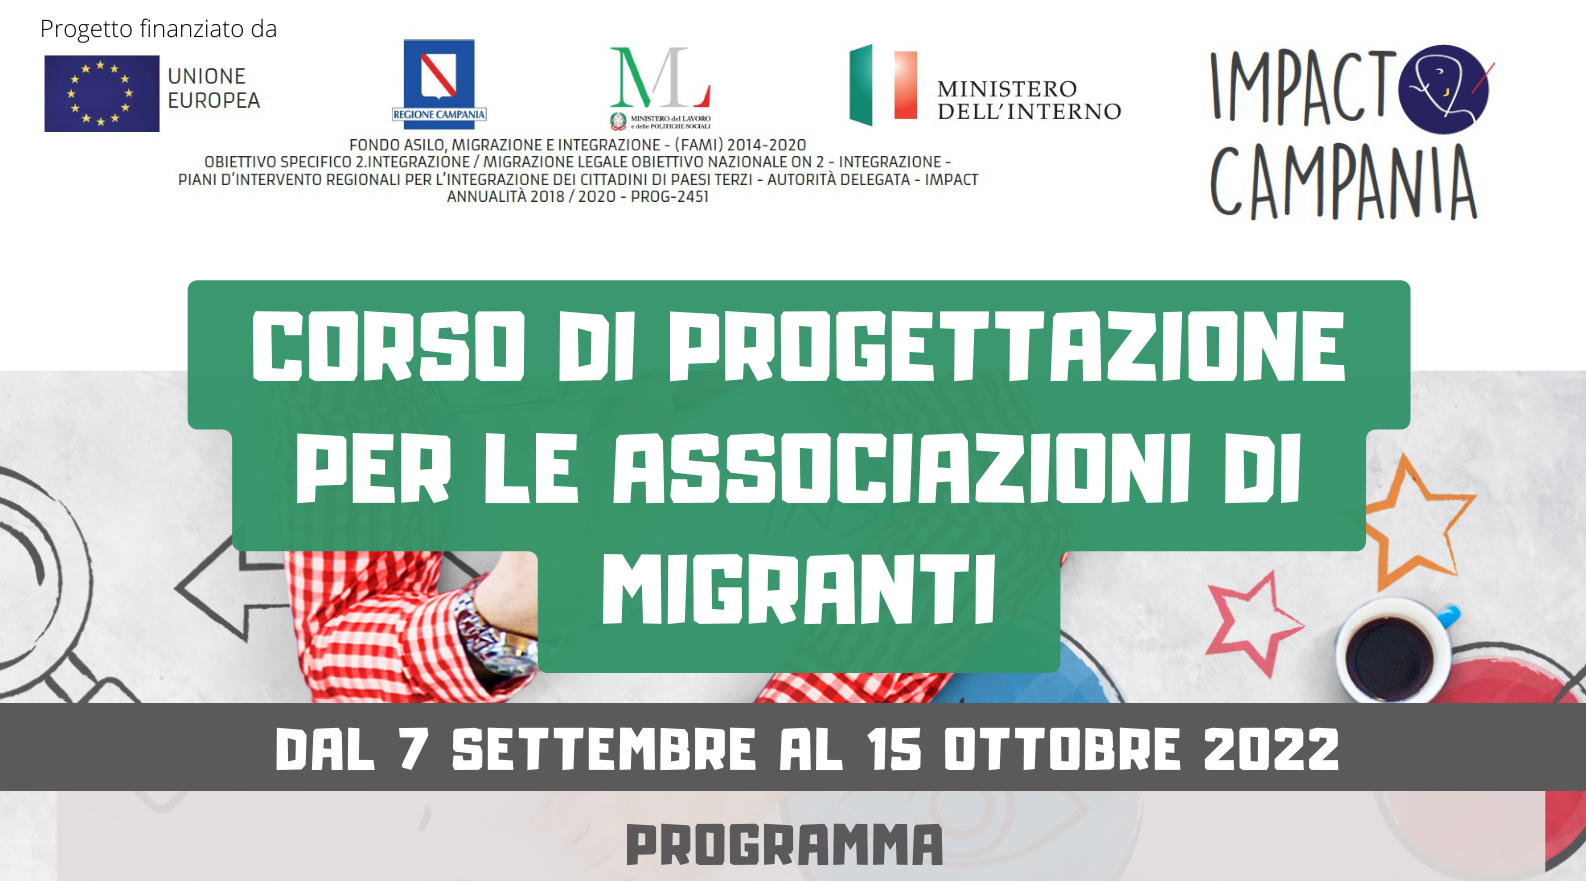 Corso di progettazione gratuito per le associazioni di migranti: dal 7 settembre al 15 ottobre a Caserta